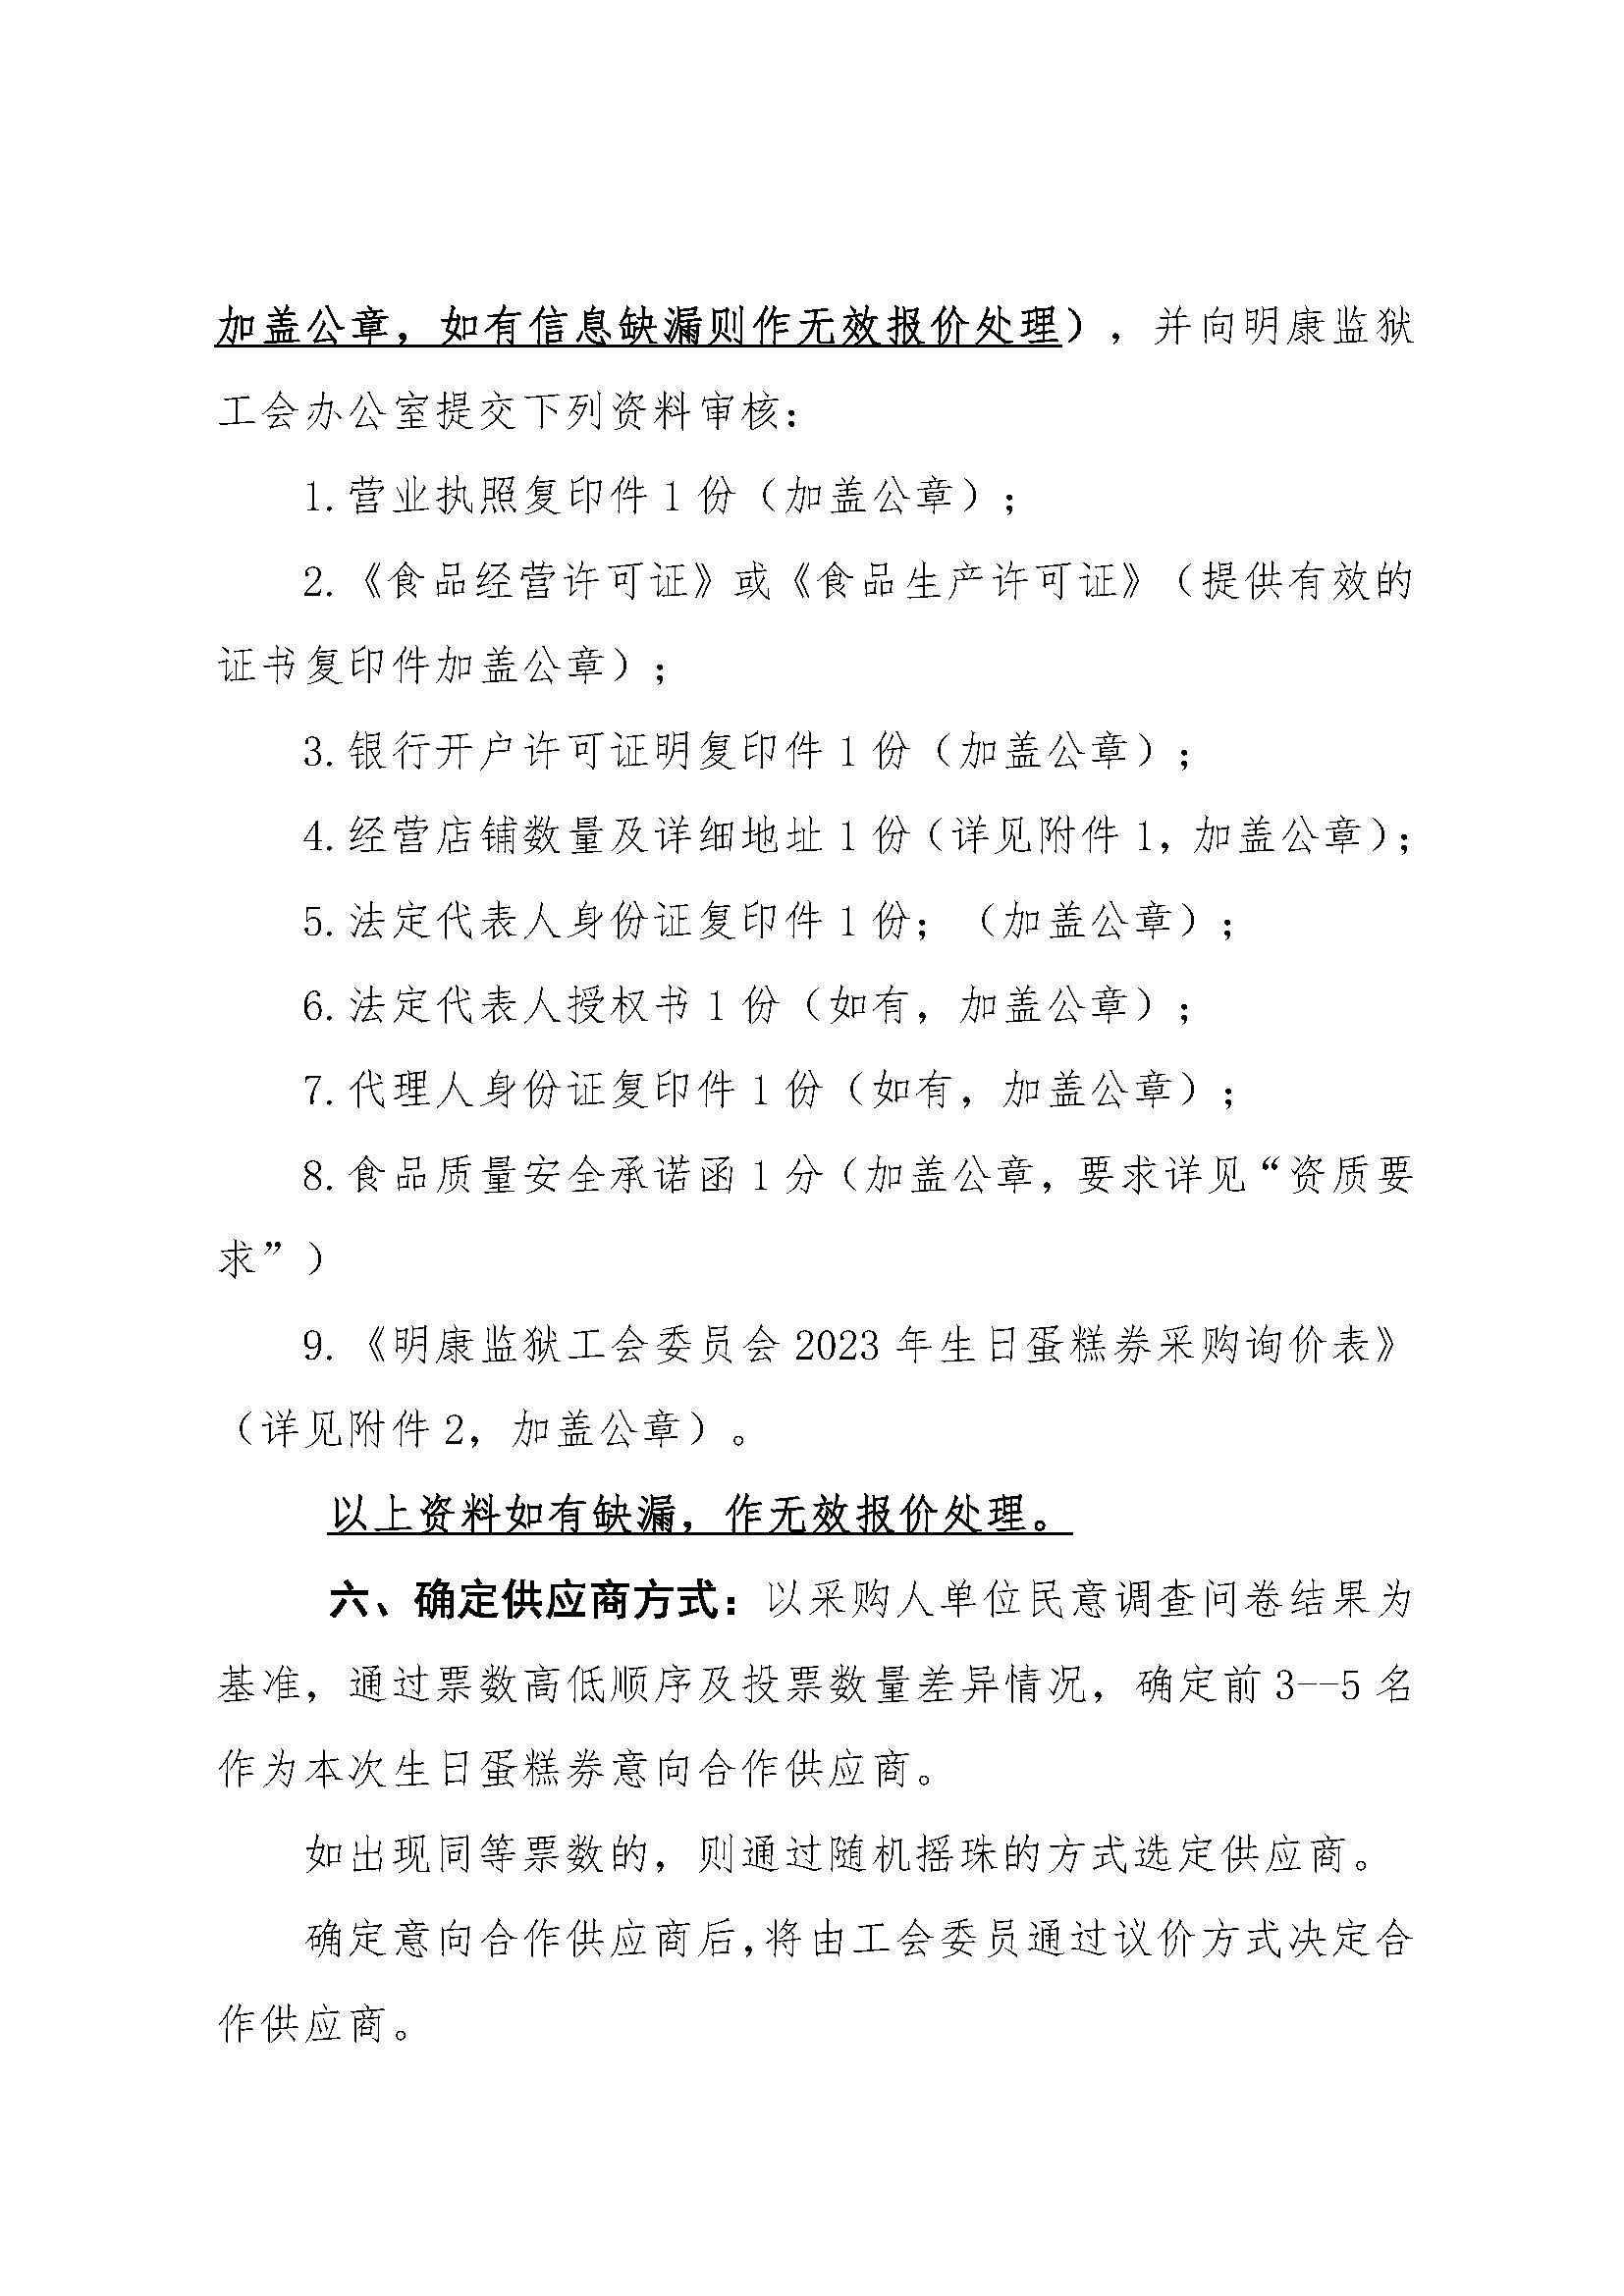 明康监狱工会2024年会员生日蛋糕券采购公告_页面_3.jpg